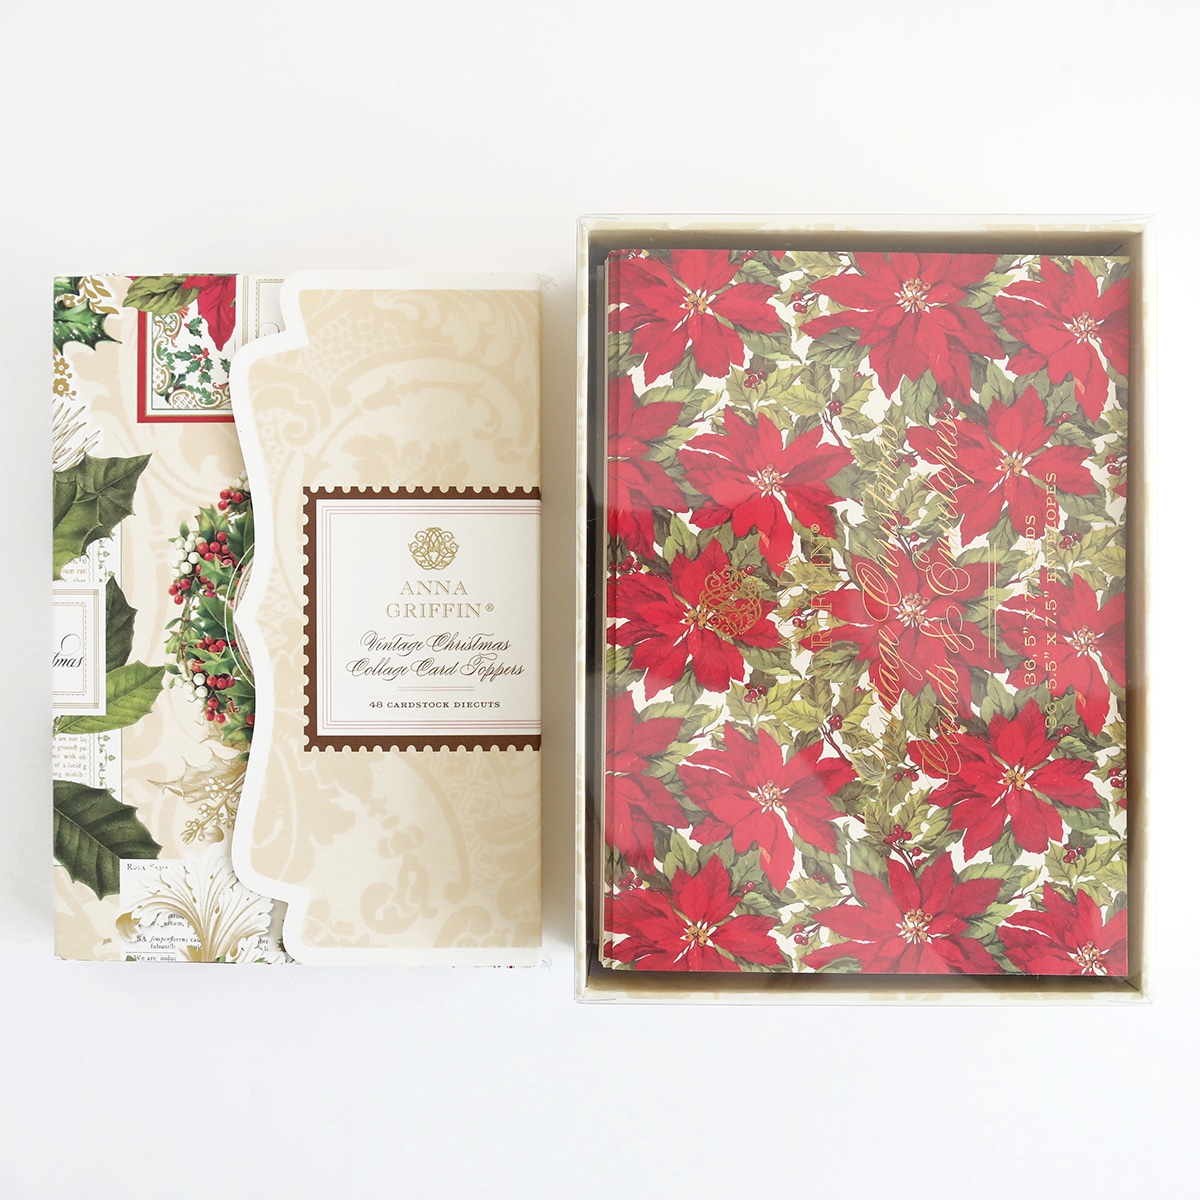 Poinsettia gift box set.